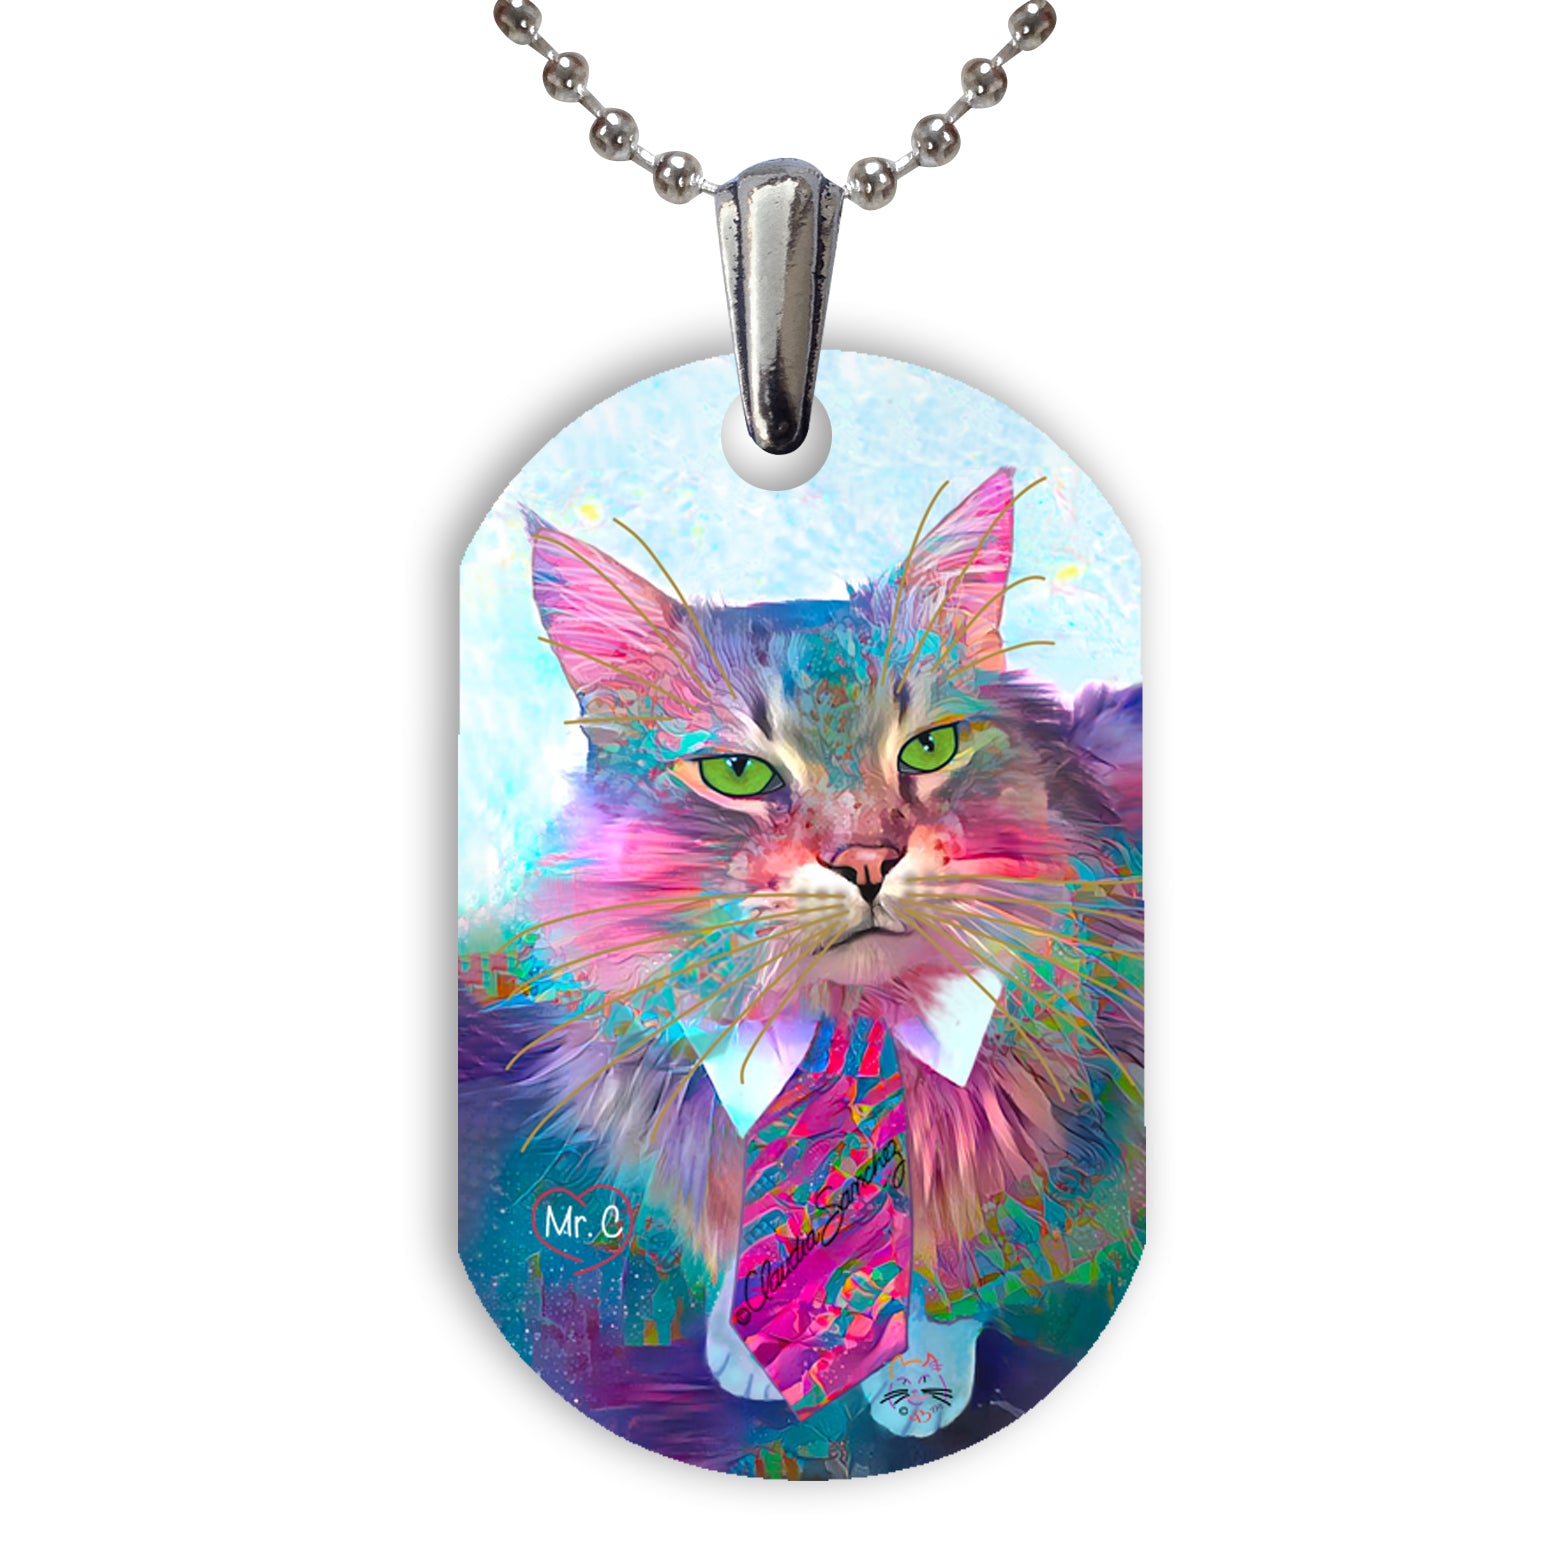 Mr C Cat Art Aluminum Pendant Necklace by Claudia Sanchez